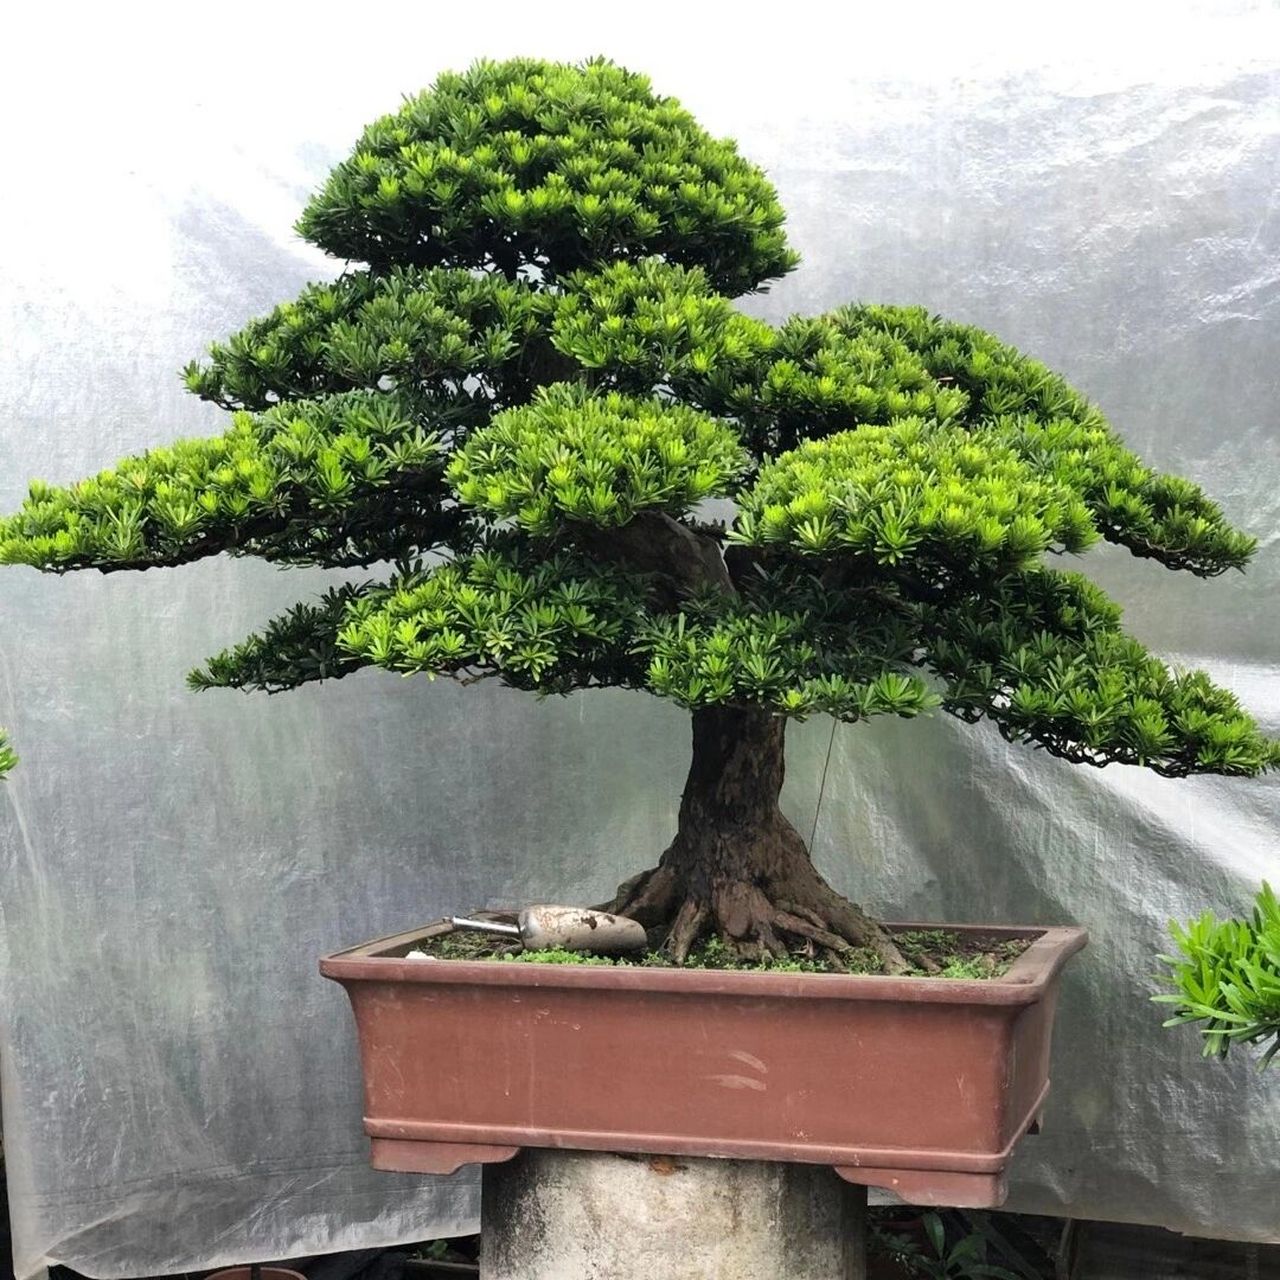 庭院景主观树一金钻罗汉松 在中国传统文化中罗汉松象征着长寿,守财